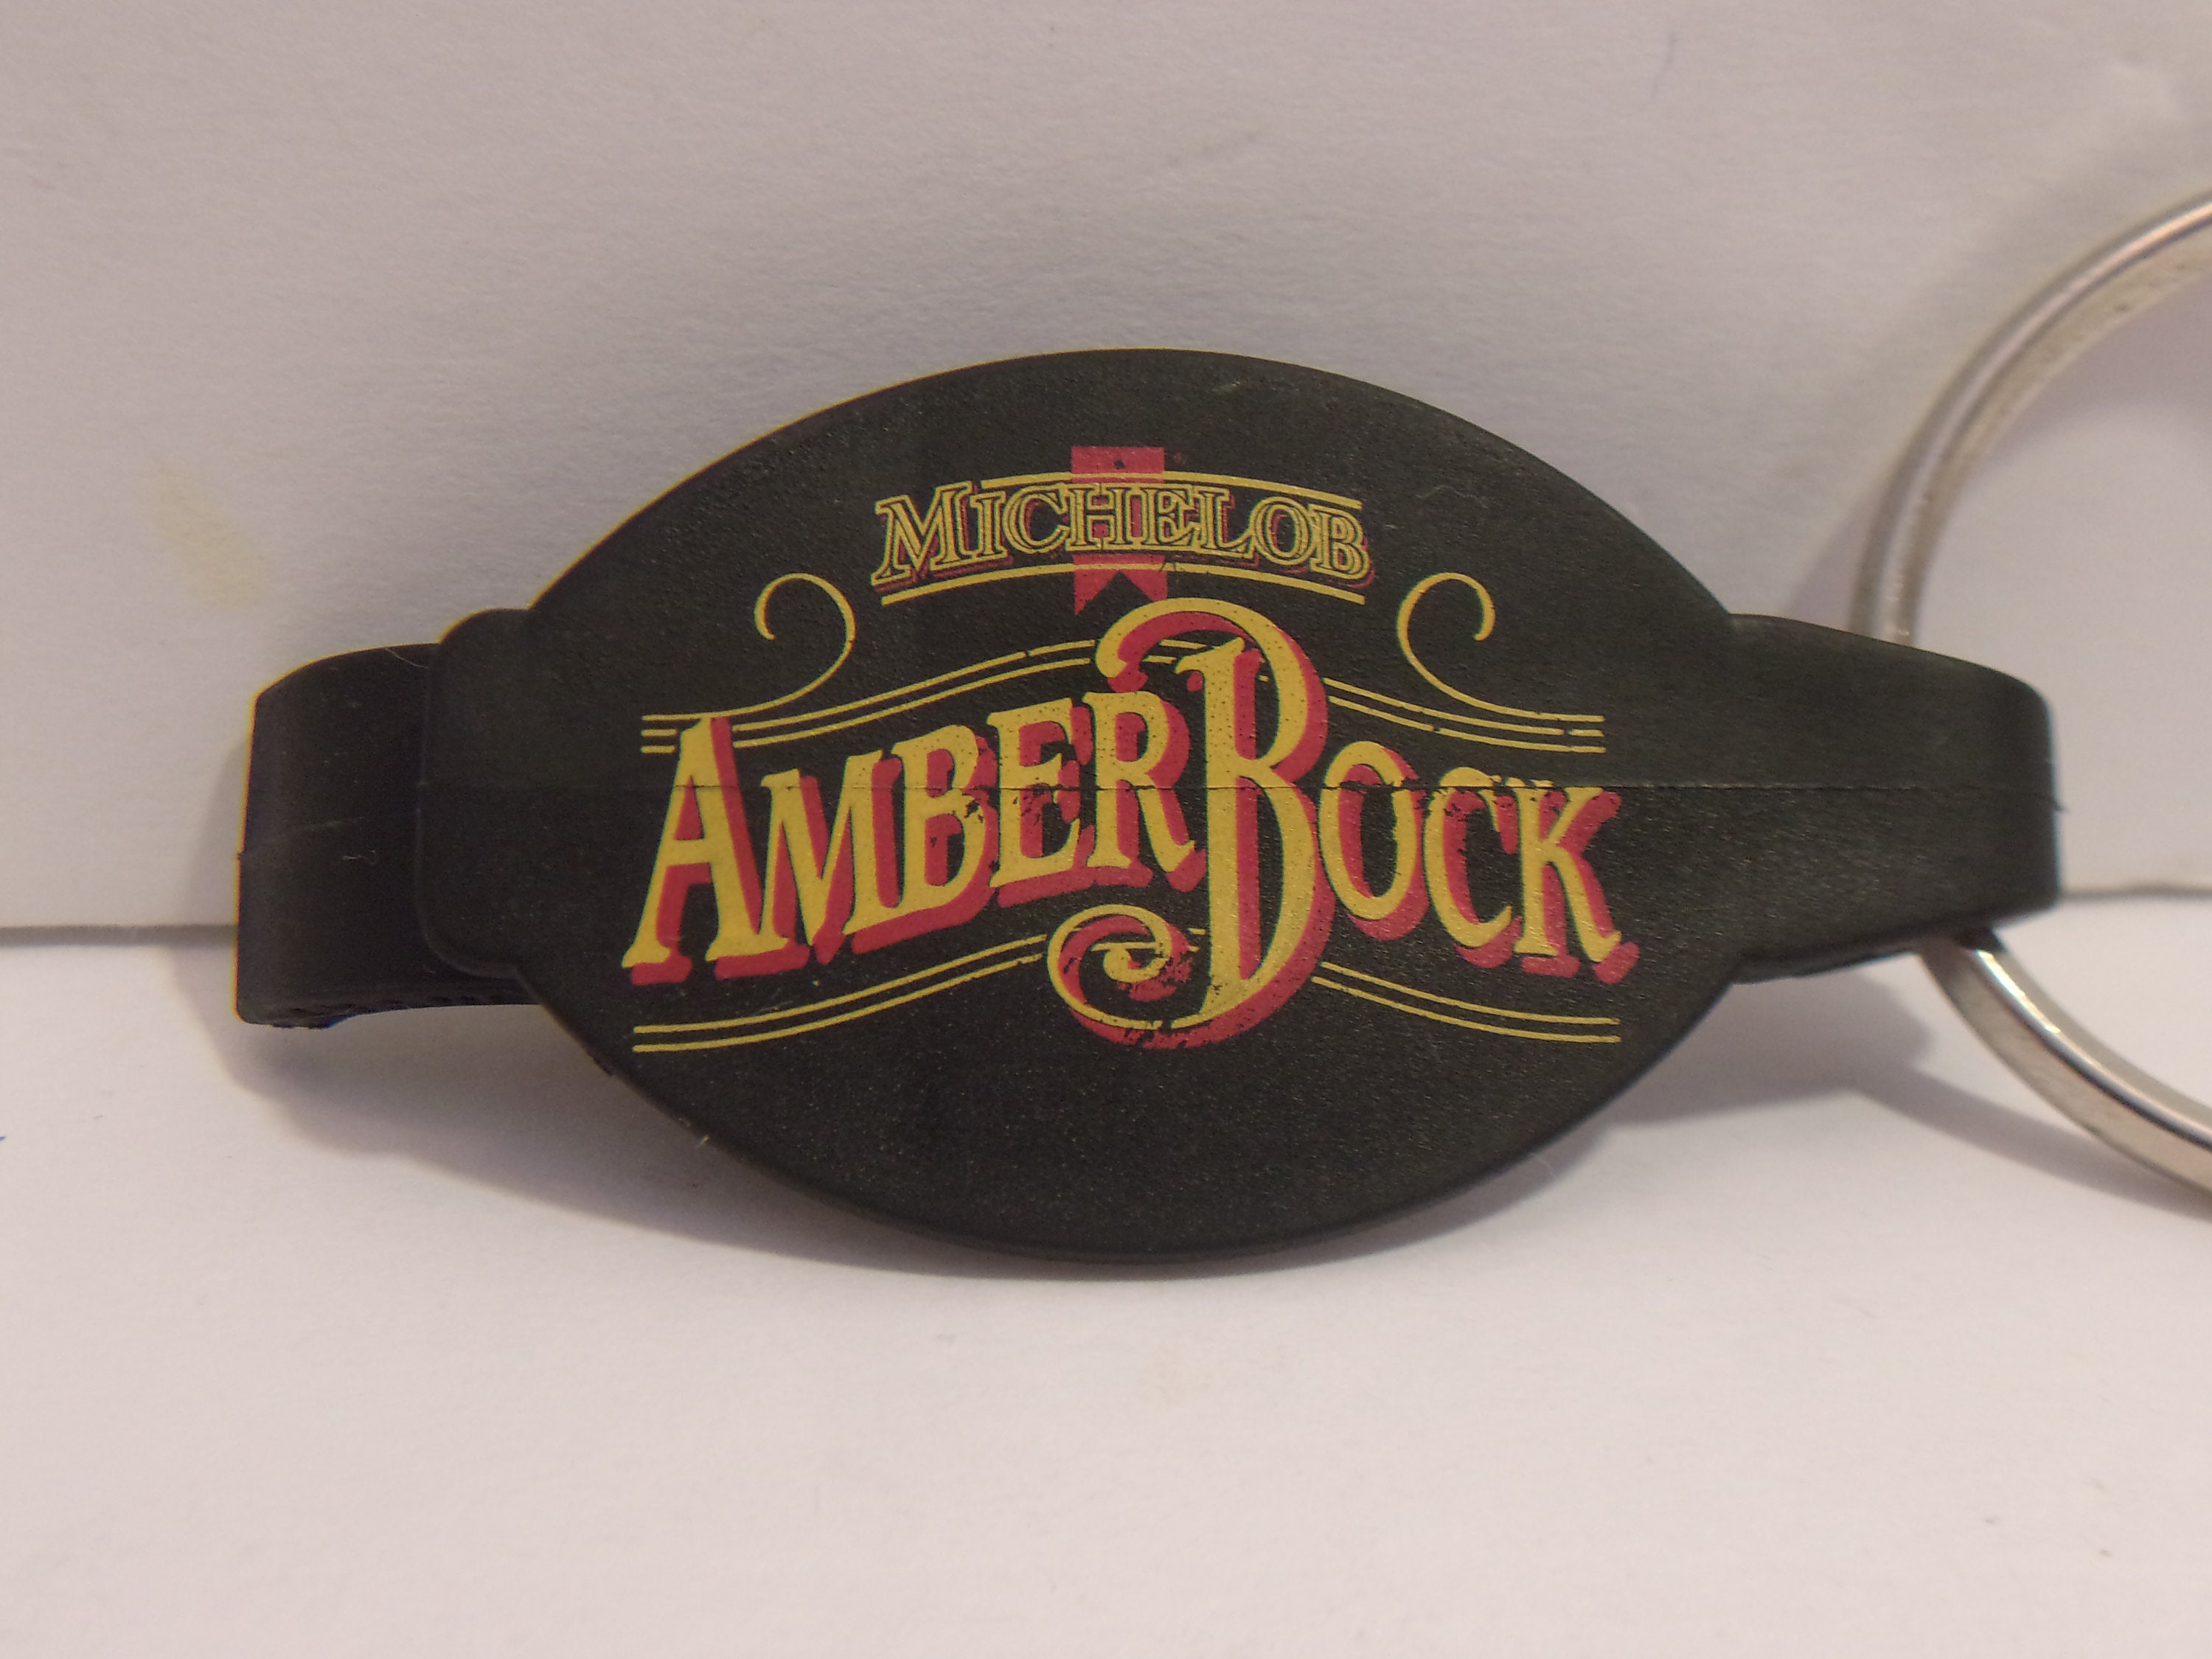 Michelob Amber Bock Bottle Opener Keychain Vintage Unisex Accessories ...